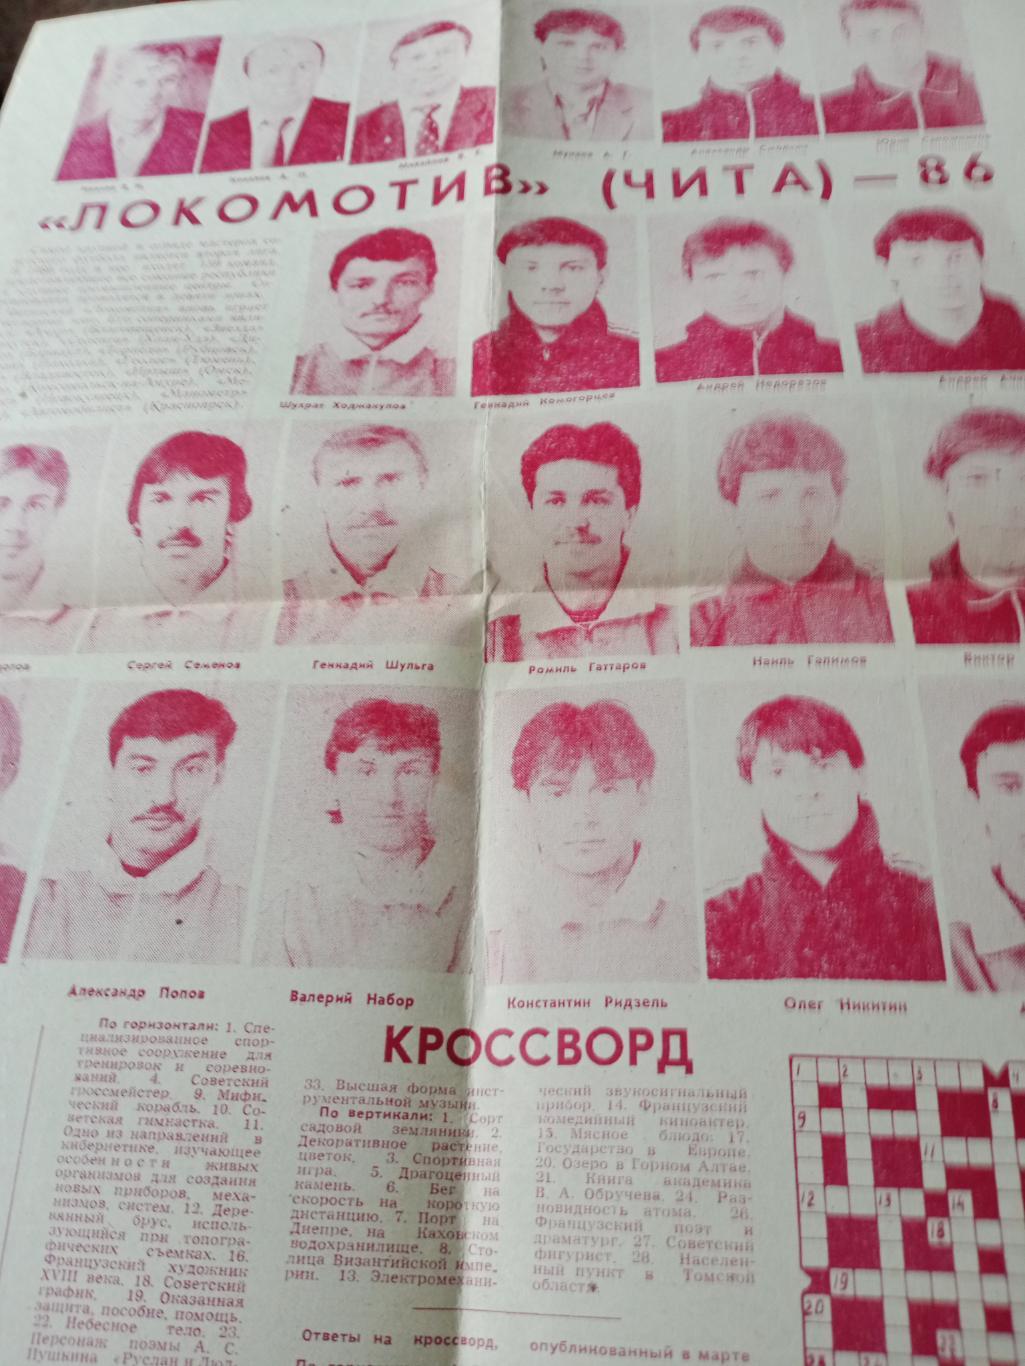 Газета Наш стадион, 1986. Представление команды Локомотив Чита.